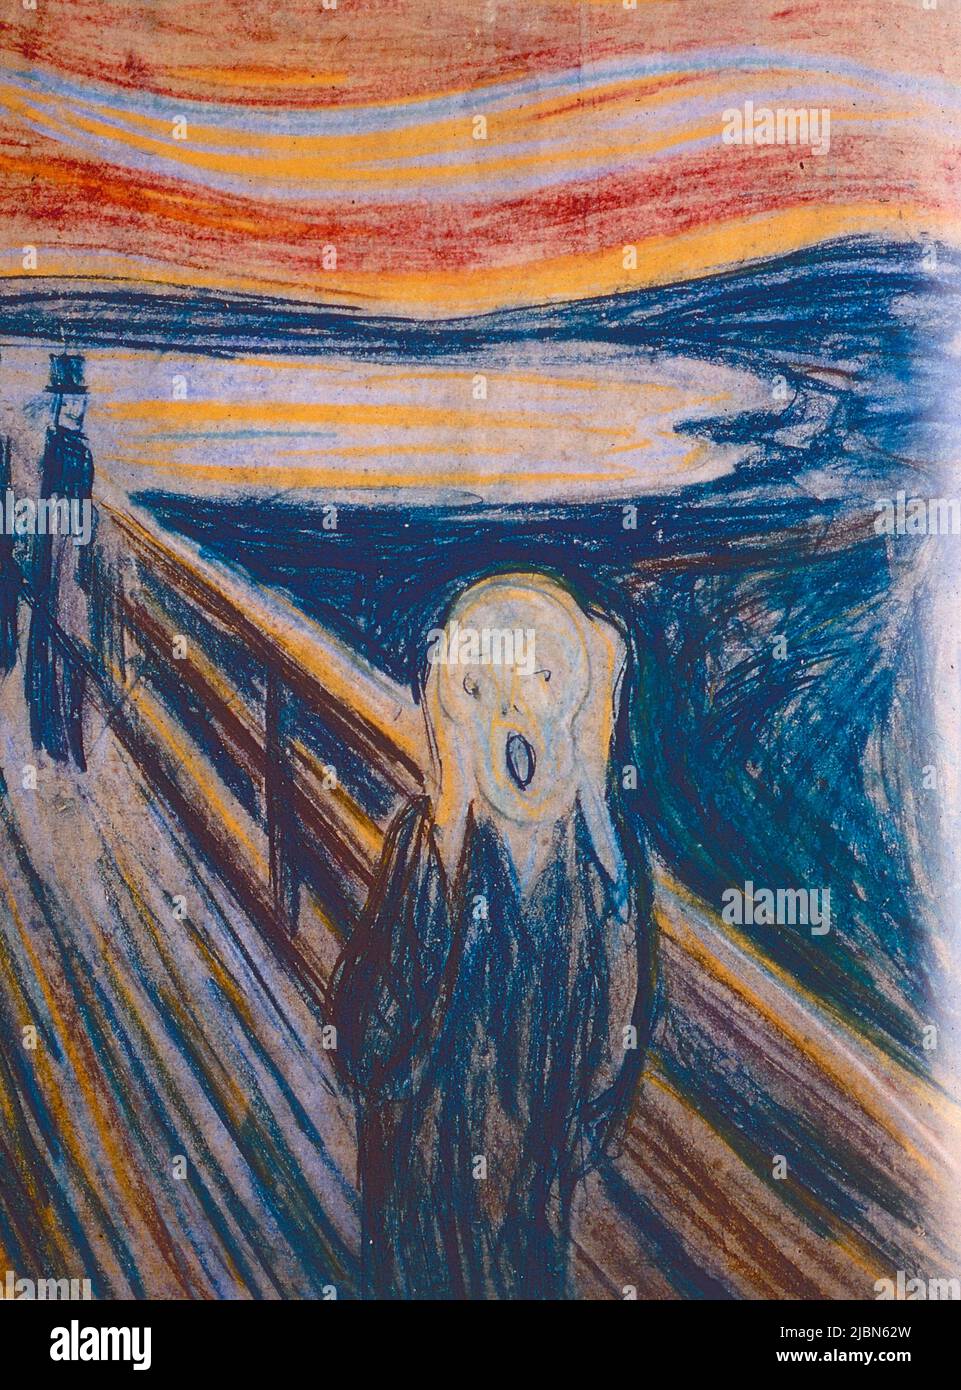 The Scream, peinture de l'artiste norvégien Edvard Munch, 1895 Banque D'Images